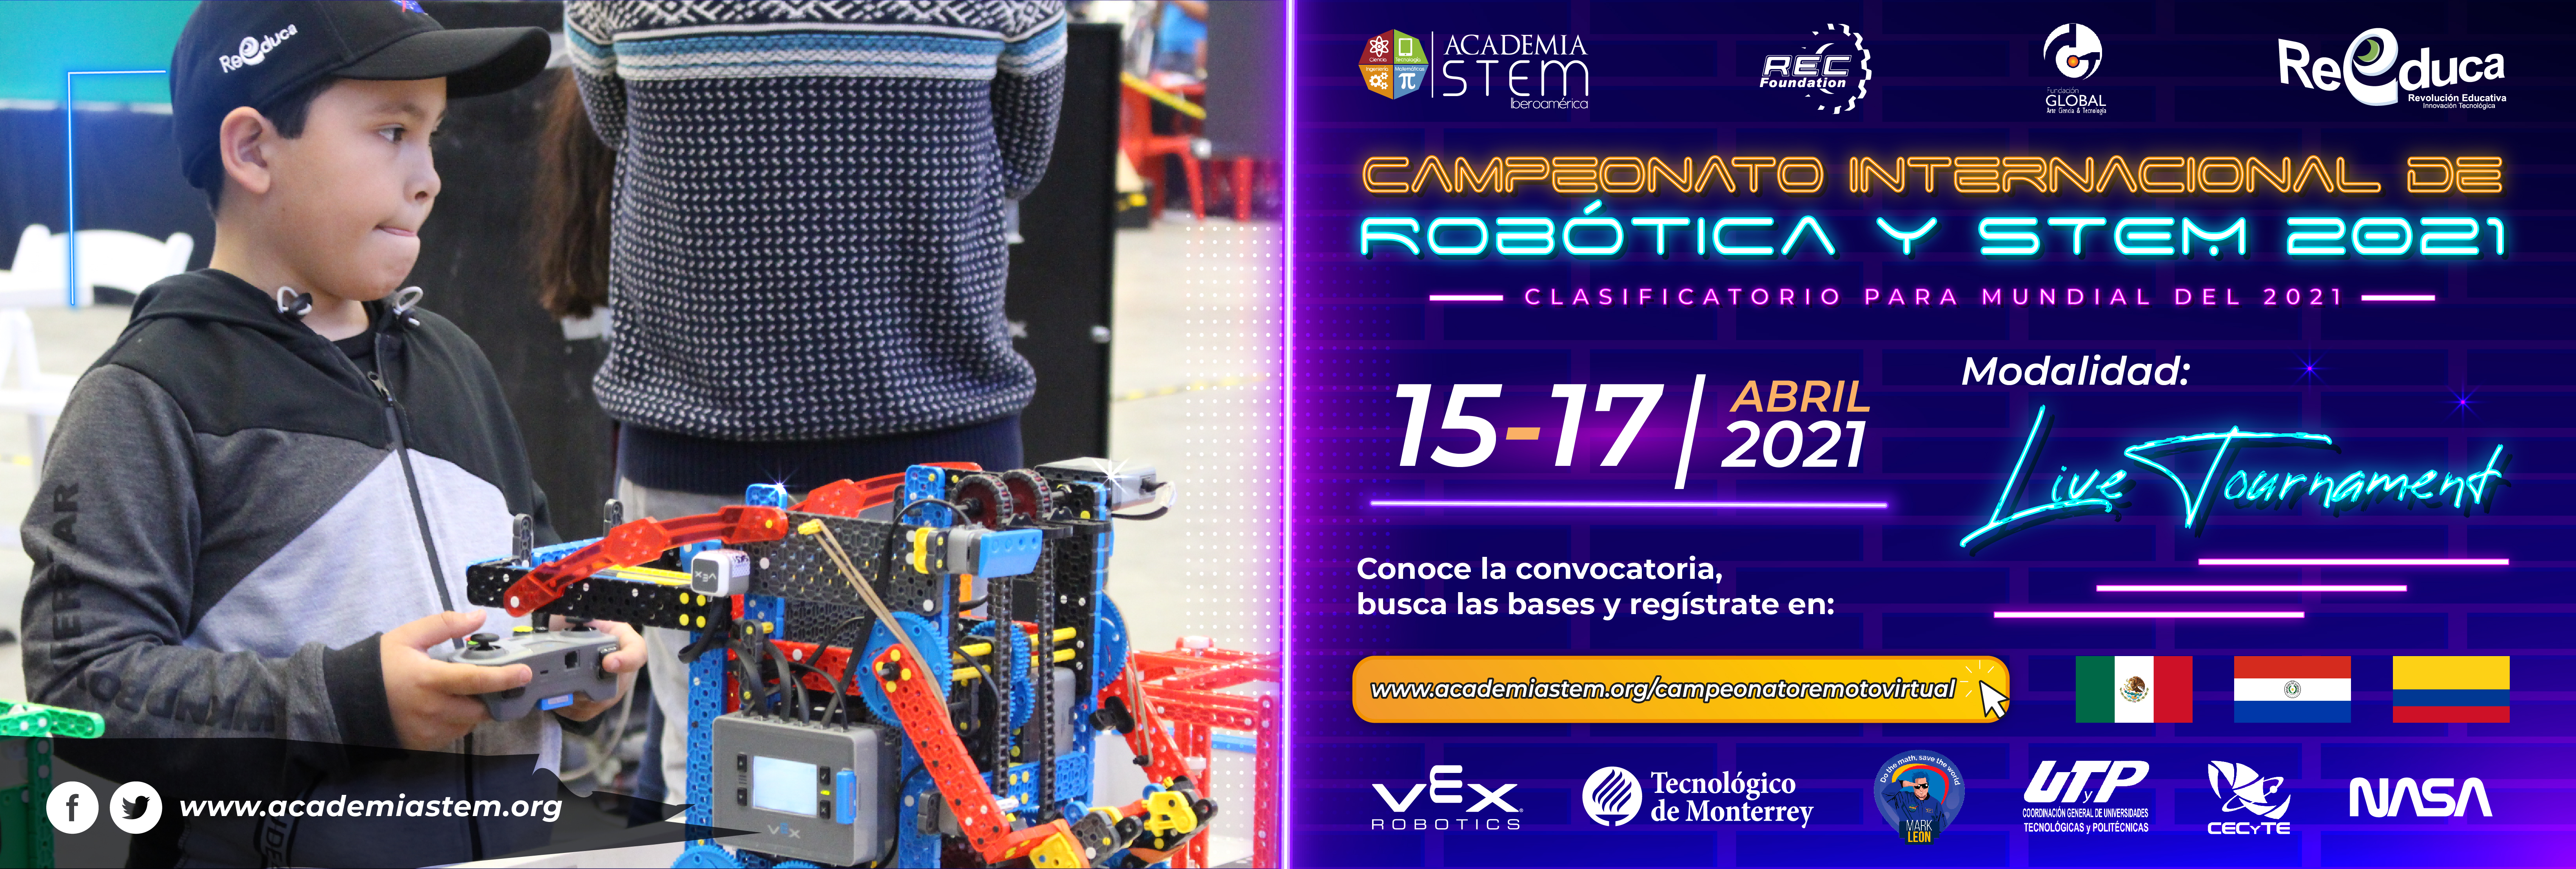 Campeonato Internacional de Robótica y STEM